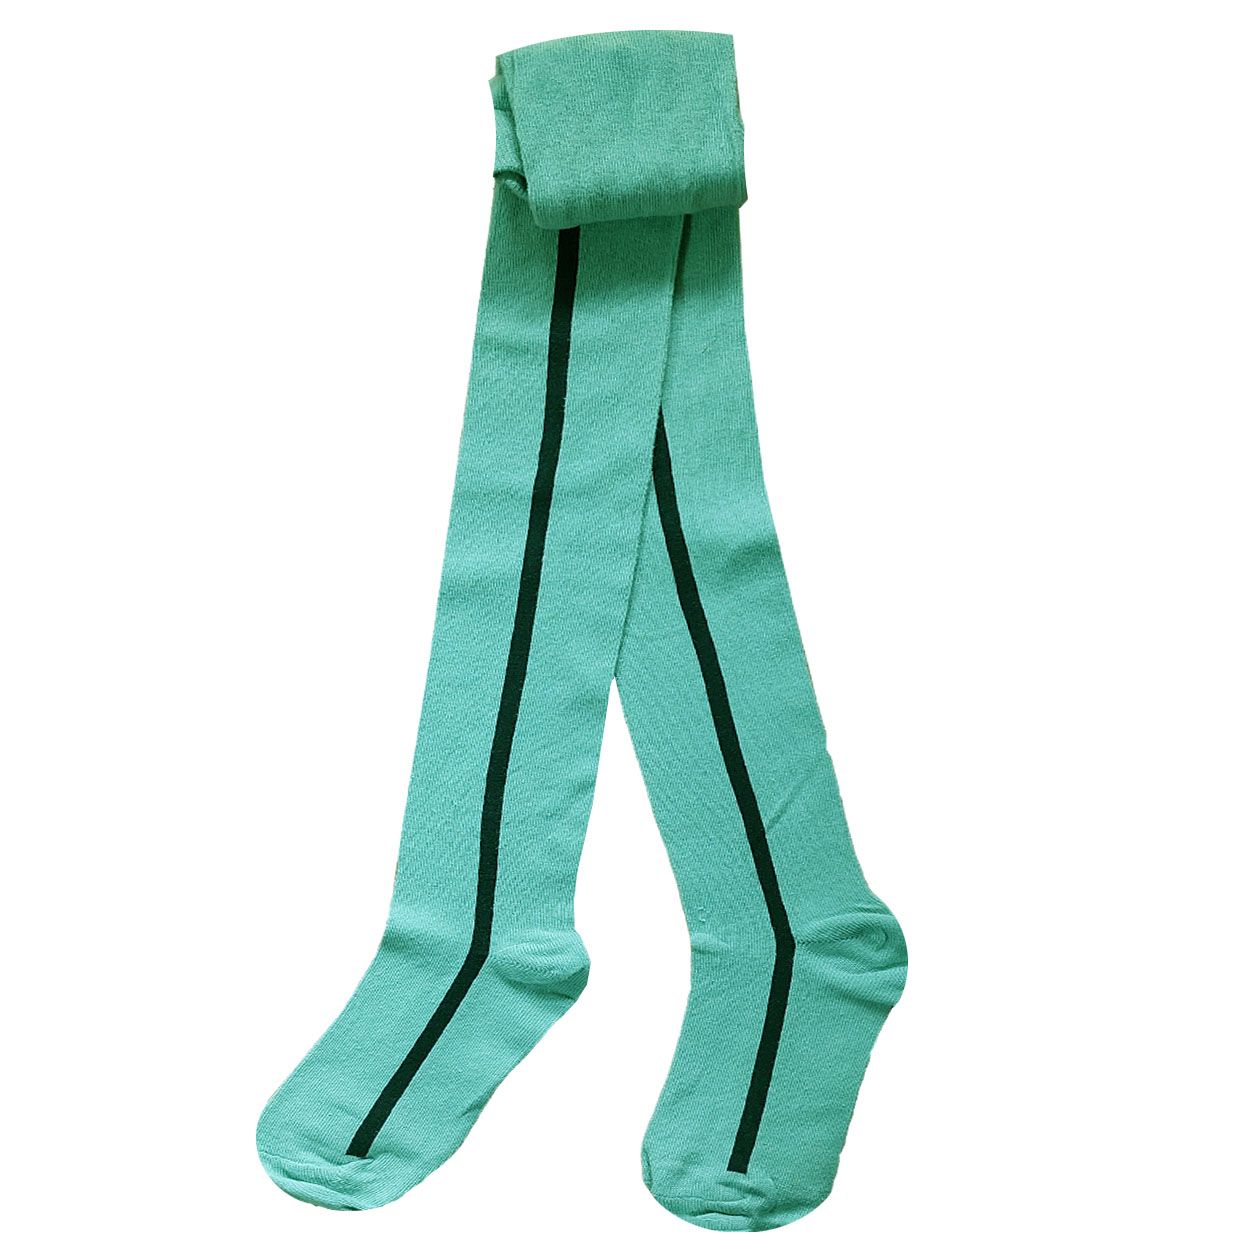 جوراب شلواری دخترانه الایو مدل لوپیل 03 رنگ سبز